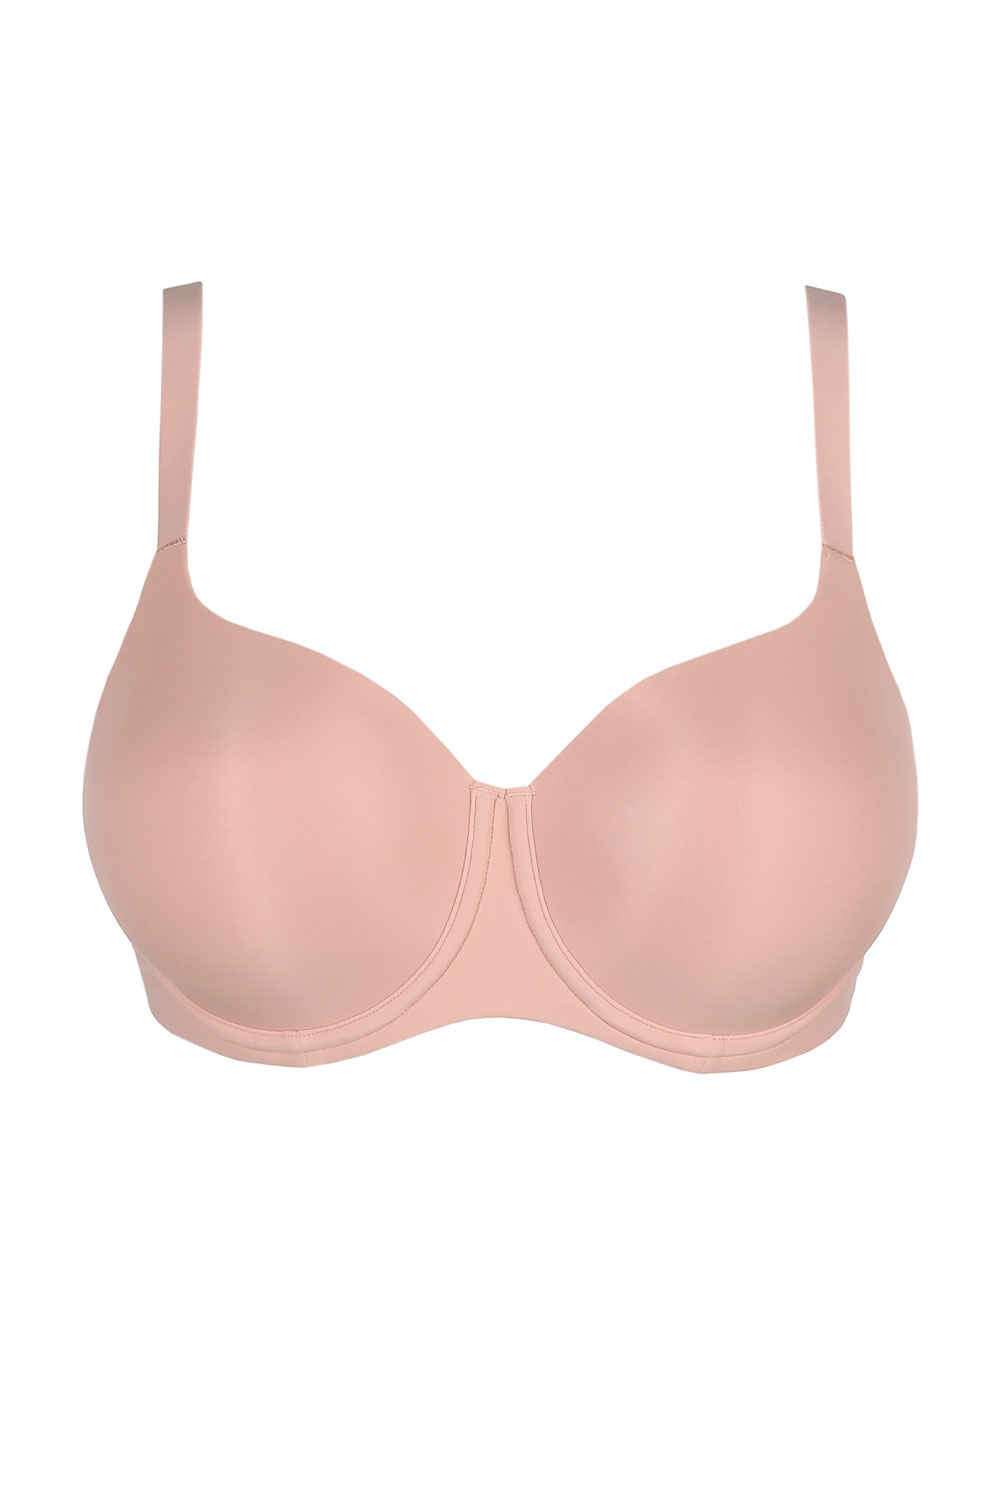 PrimaDonna Schalen-BH, Herzform Figuras 85B rosa günstig online kaufen